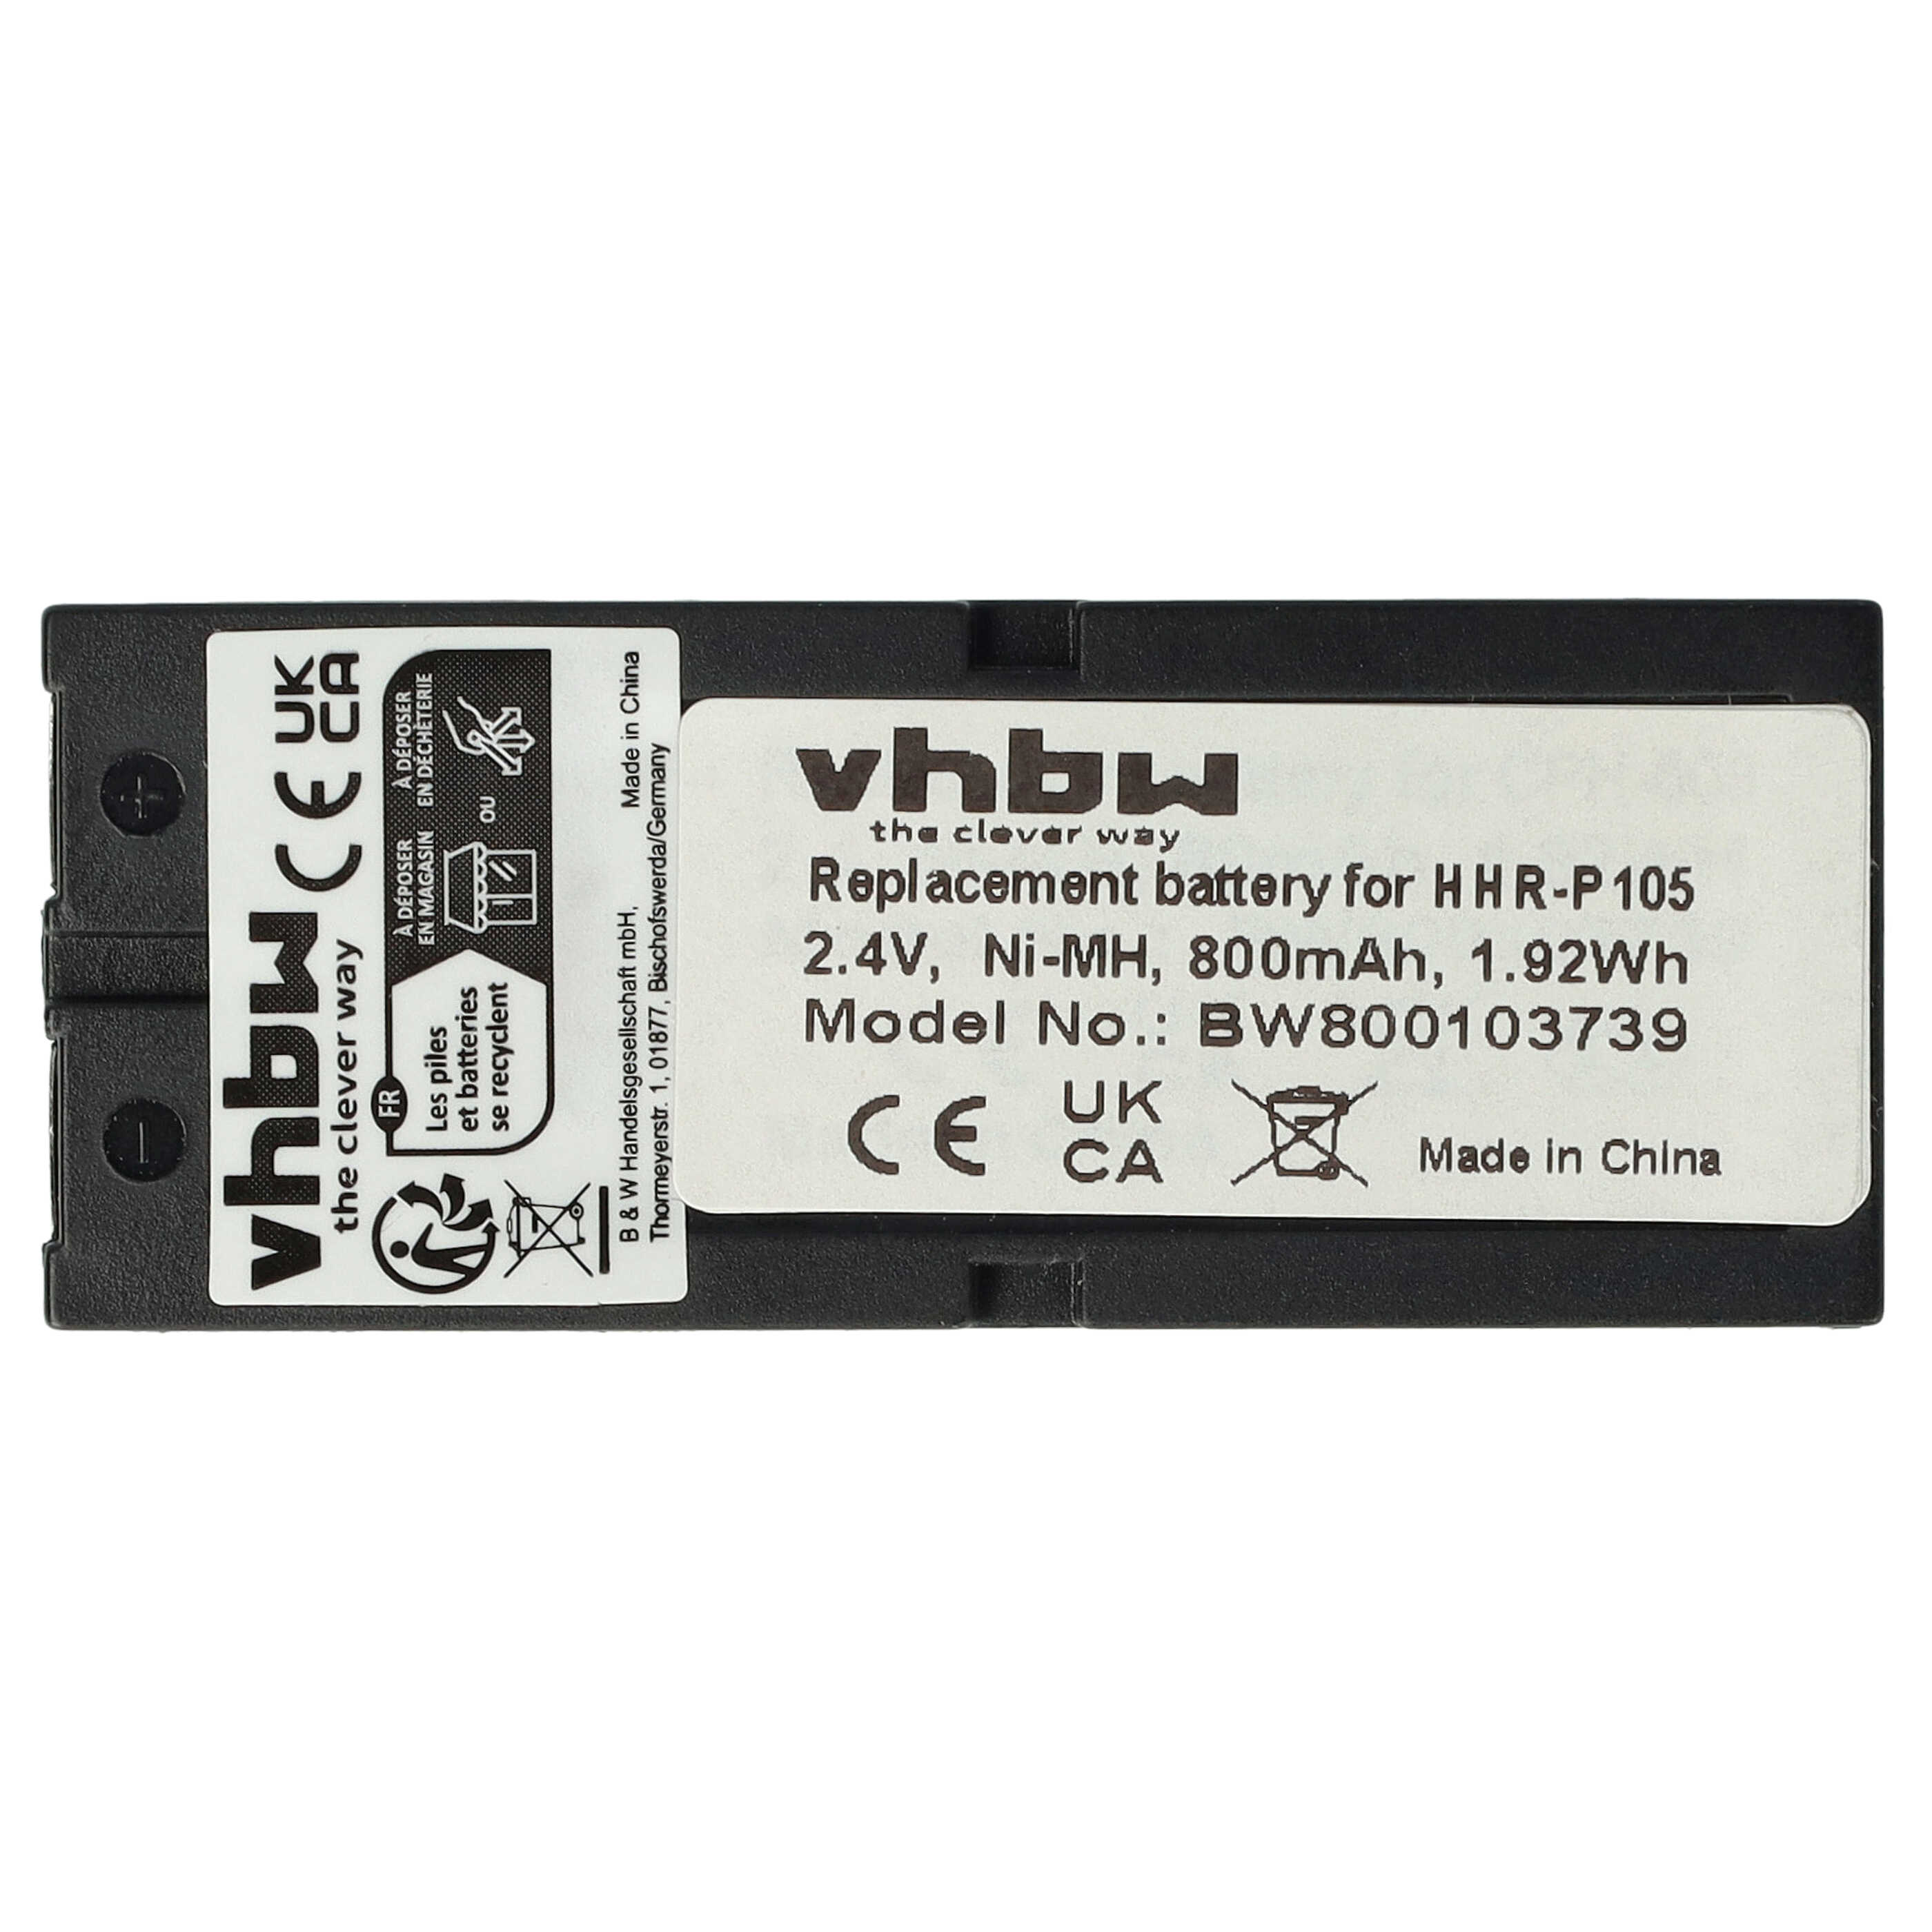 Batterie remplace CPH-508 pour téléphone - 800mAh 2,4V NiMH